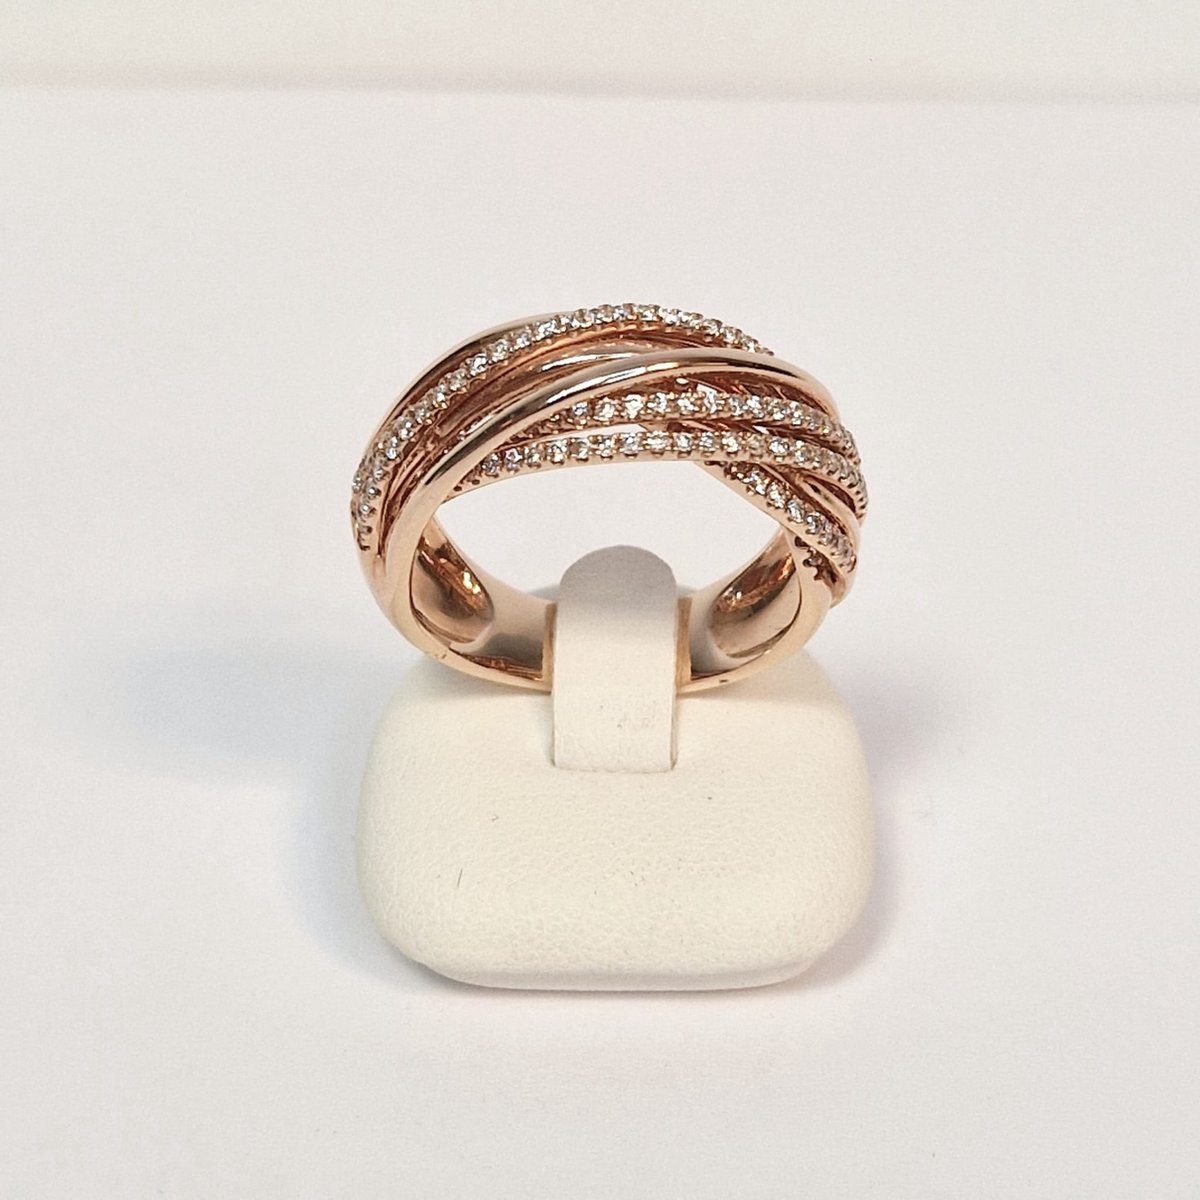 Damesring - roségoud - 14 karaat - diamant - uitverkoop Juwelier Verlinden St. Hubert - van €2799,= voor €1595,=